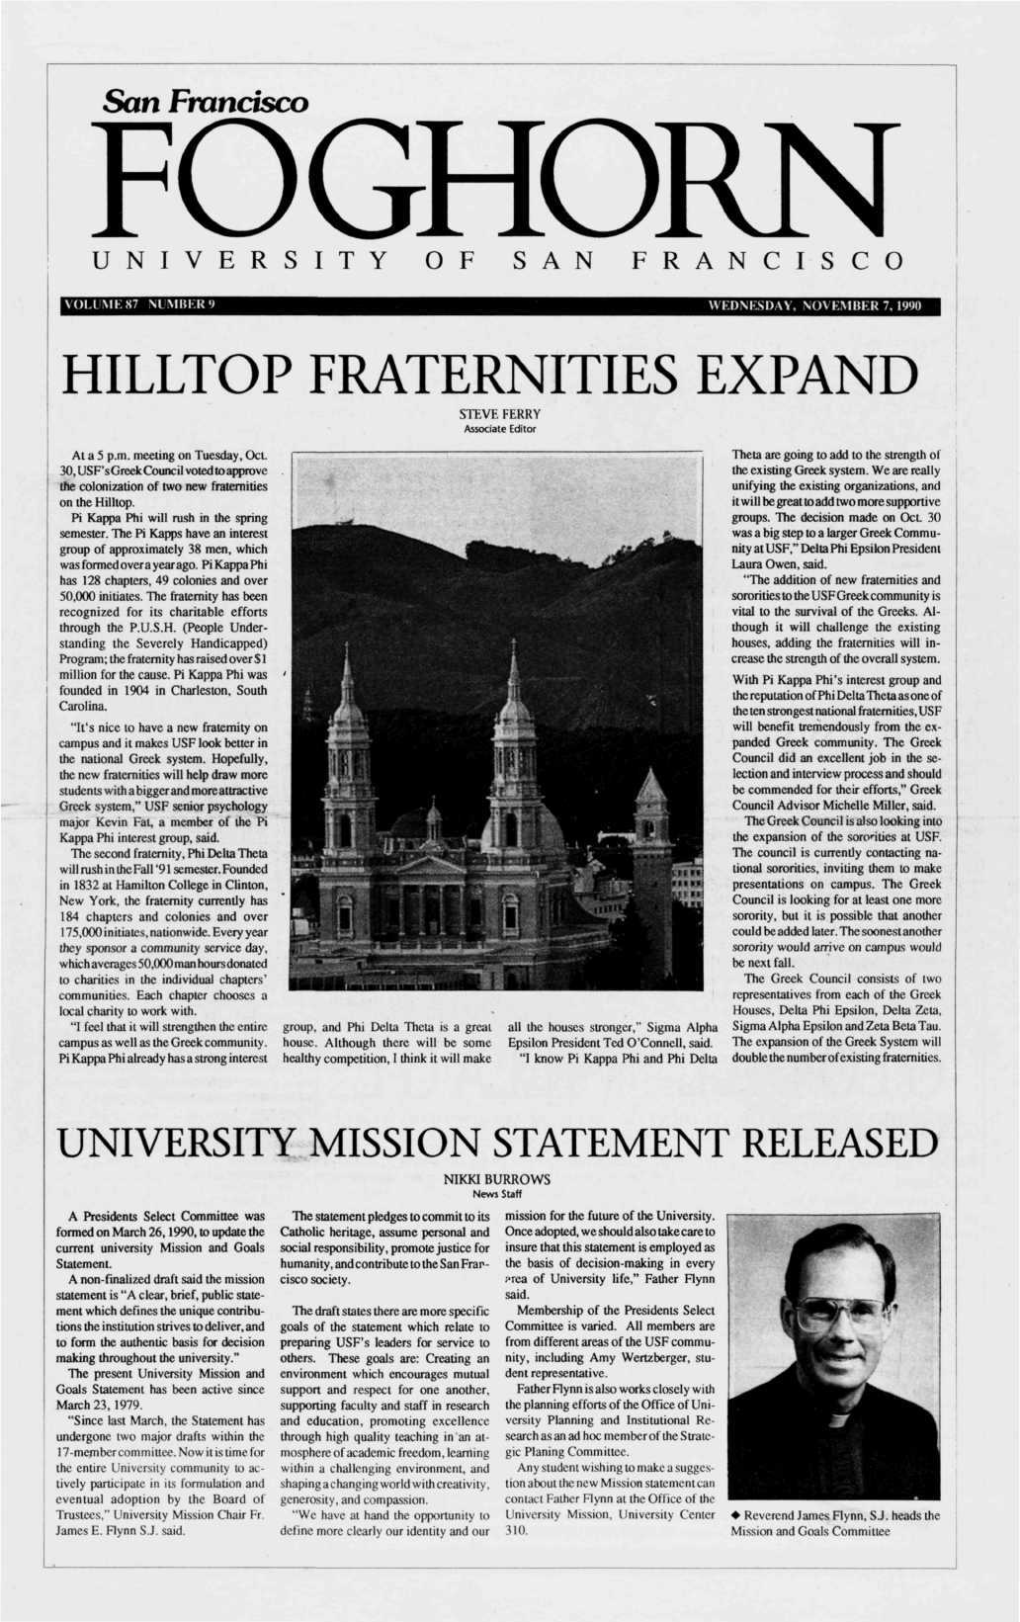 HILLTOP FRATERNITIES EXPAND STEVE FERRY Associate Editor